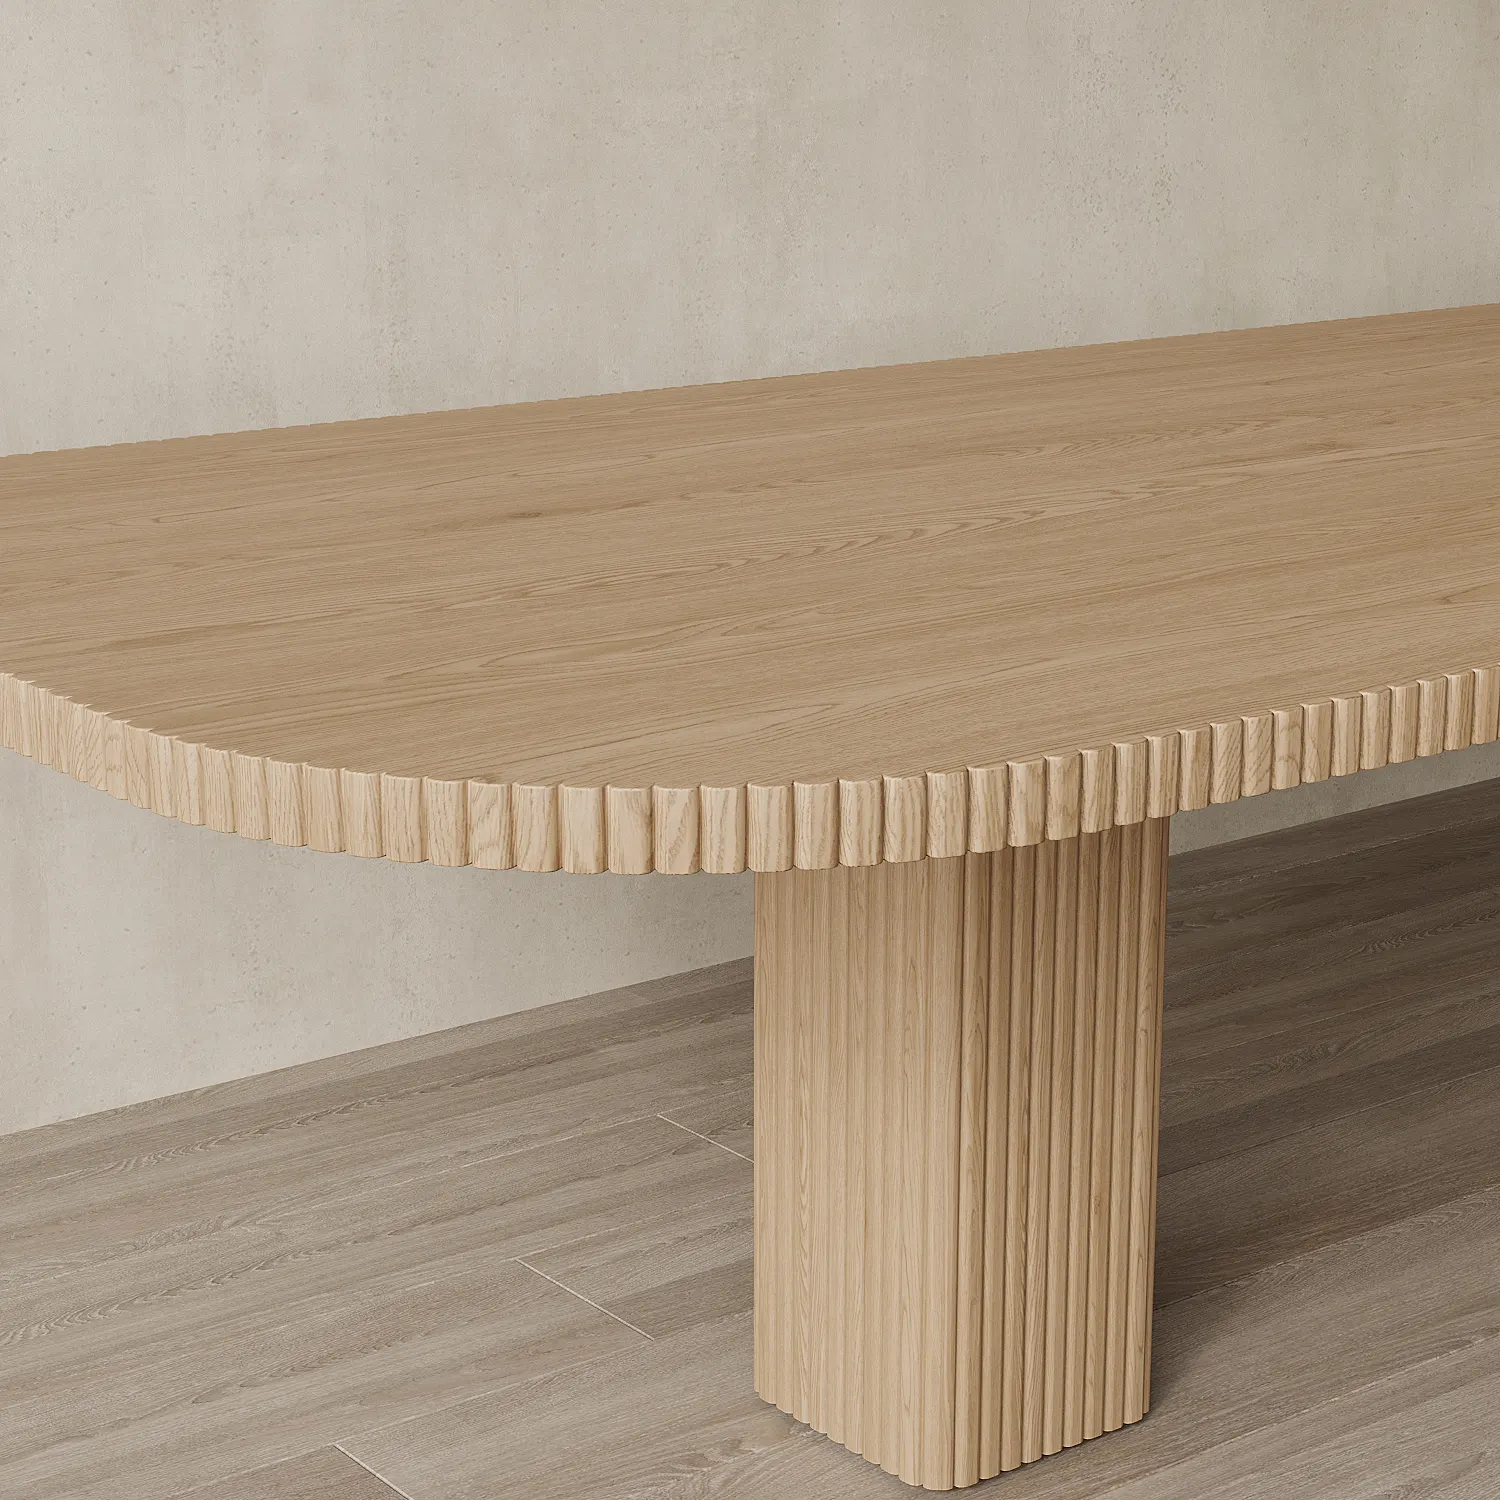 Set di lusso di personalizzazione 6 posti sala da pranzo mobili moderno in legno massello tavolo da pranzo 6 posti